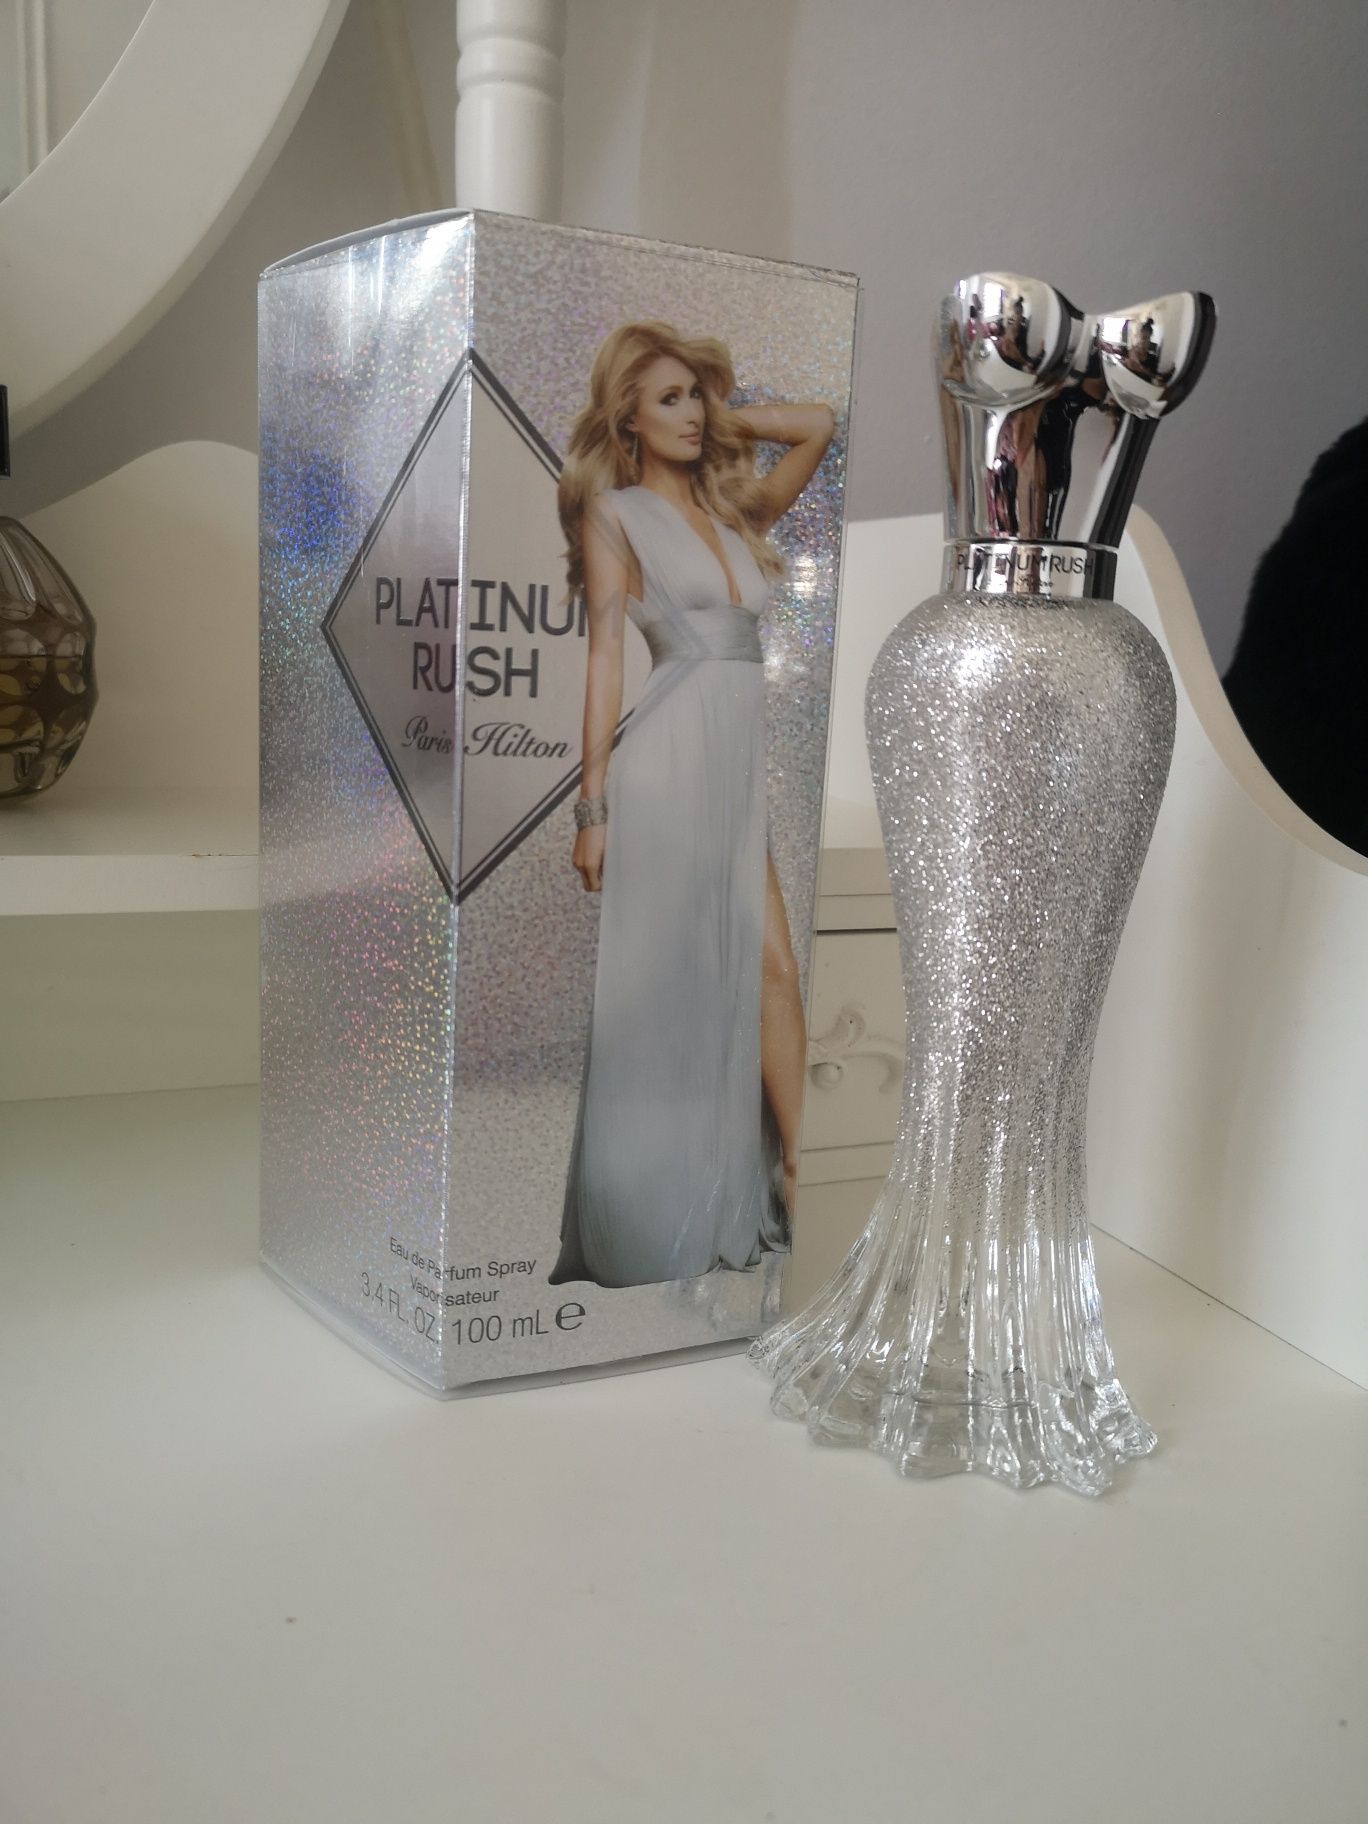 Perfumy Paris Hilton platinium rush 100 ml